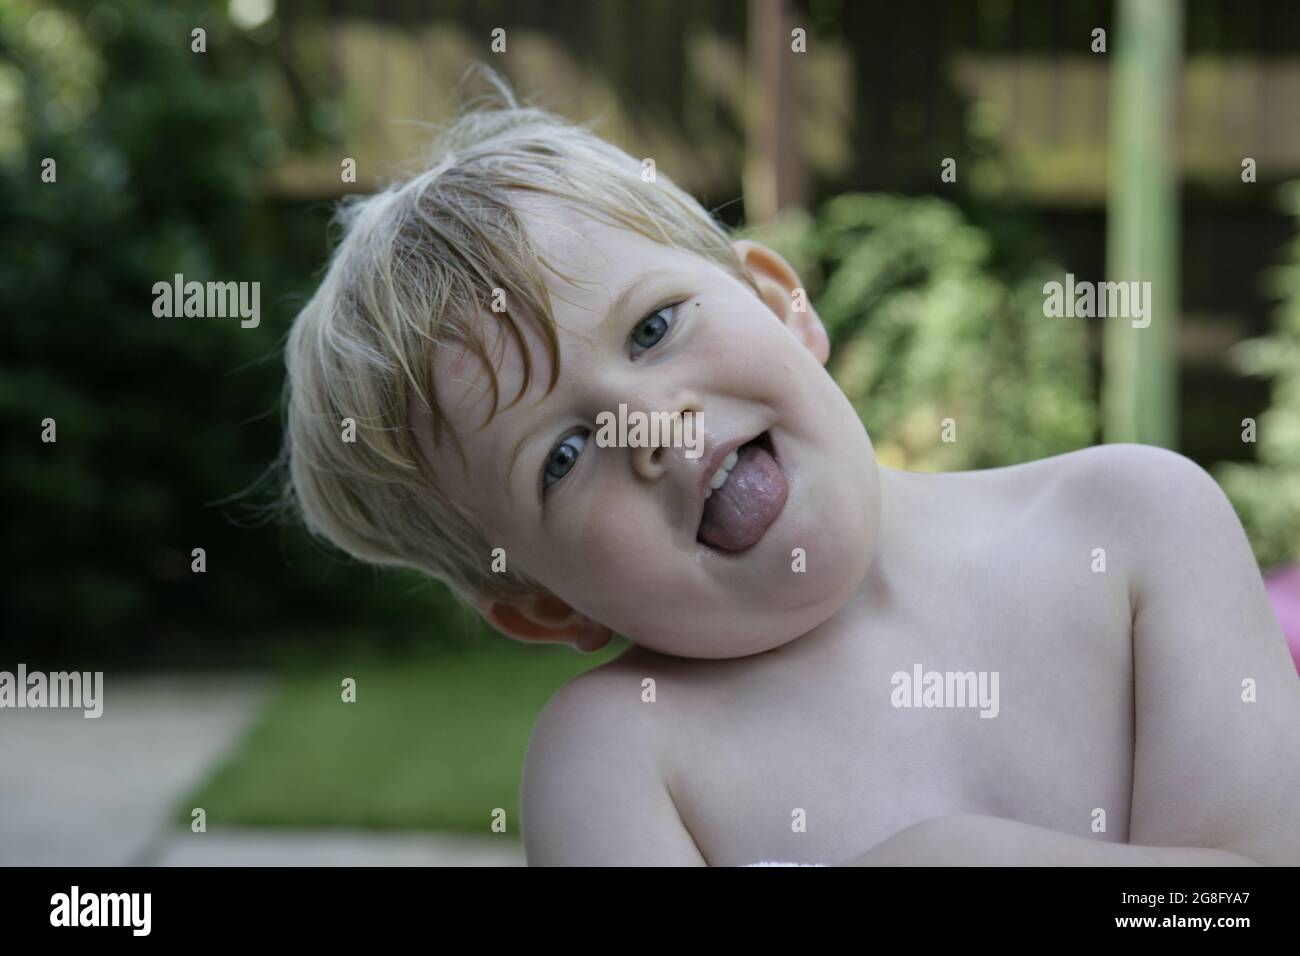 Giardino estivo esterno ritratto di bambino piccolo con i capelli biondi avvolti in asciugamano Foto Stock